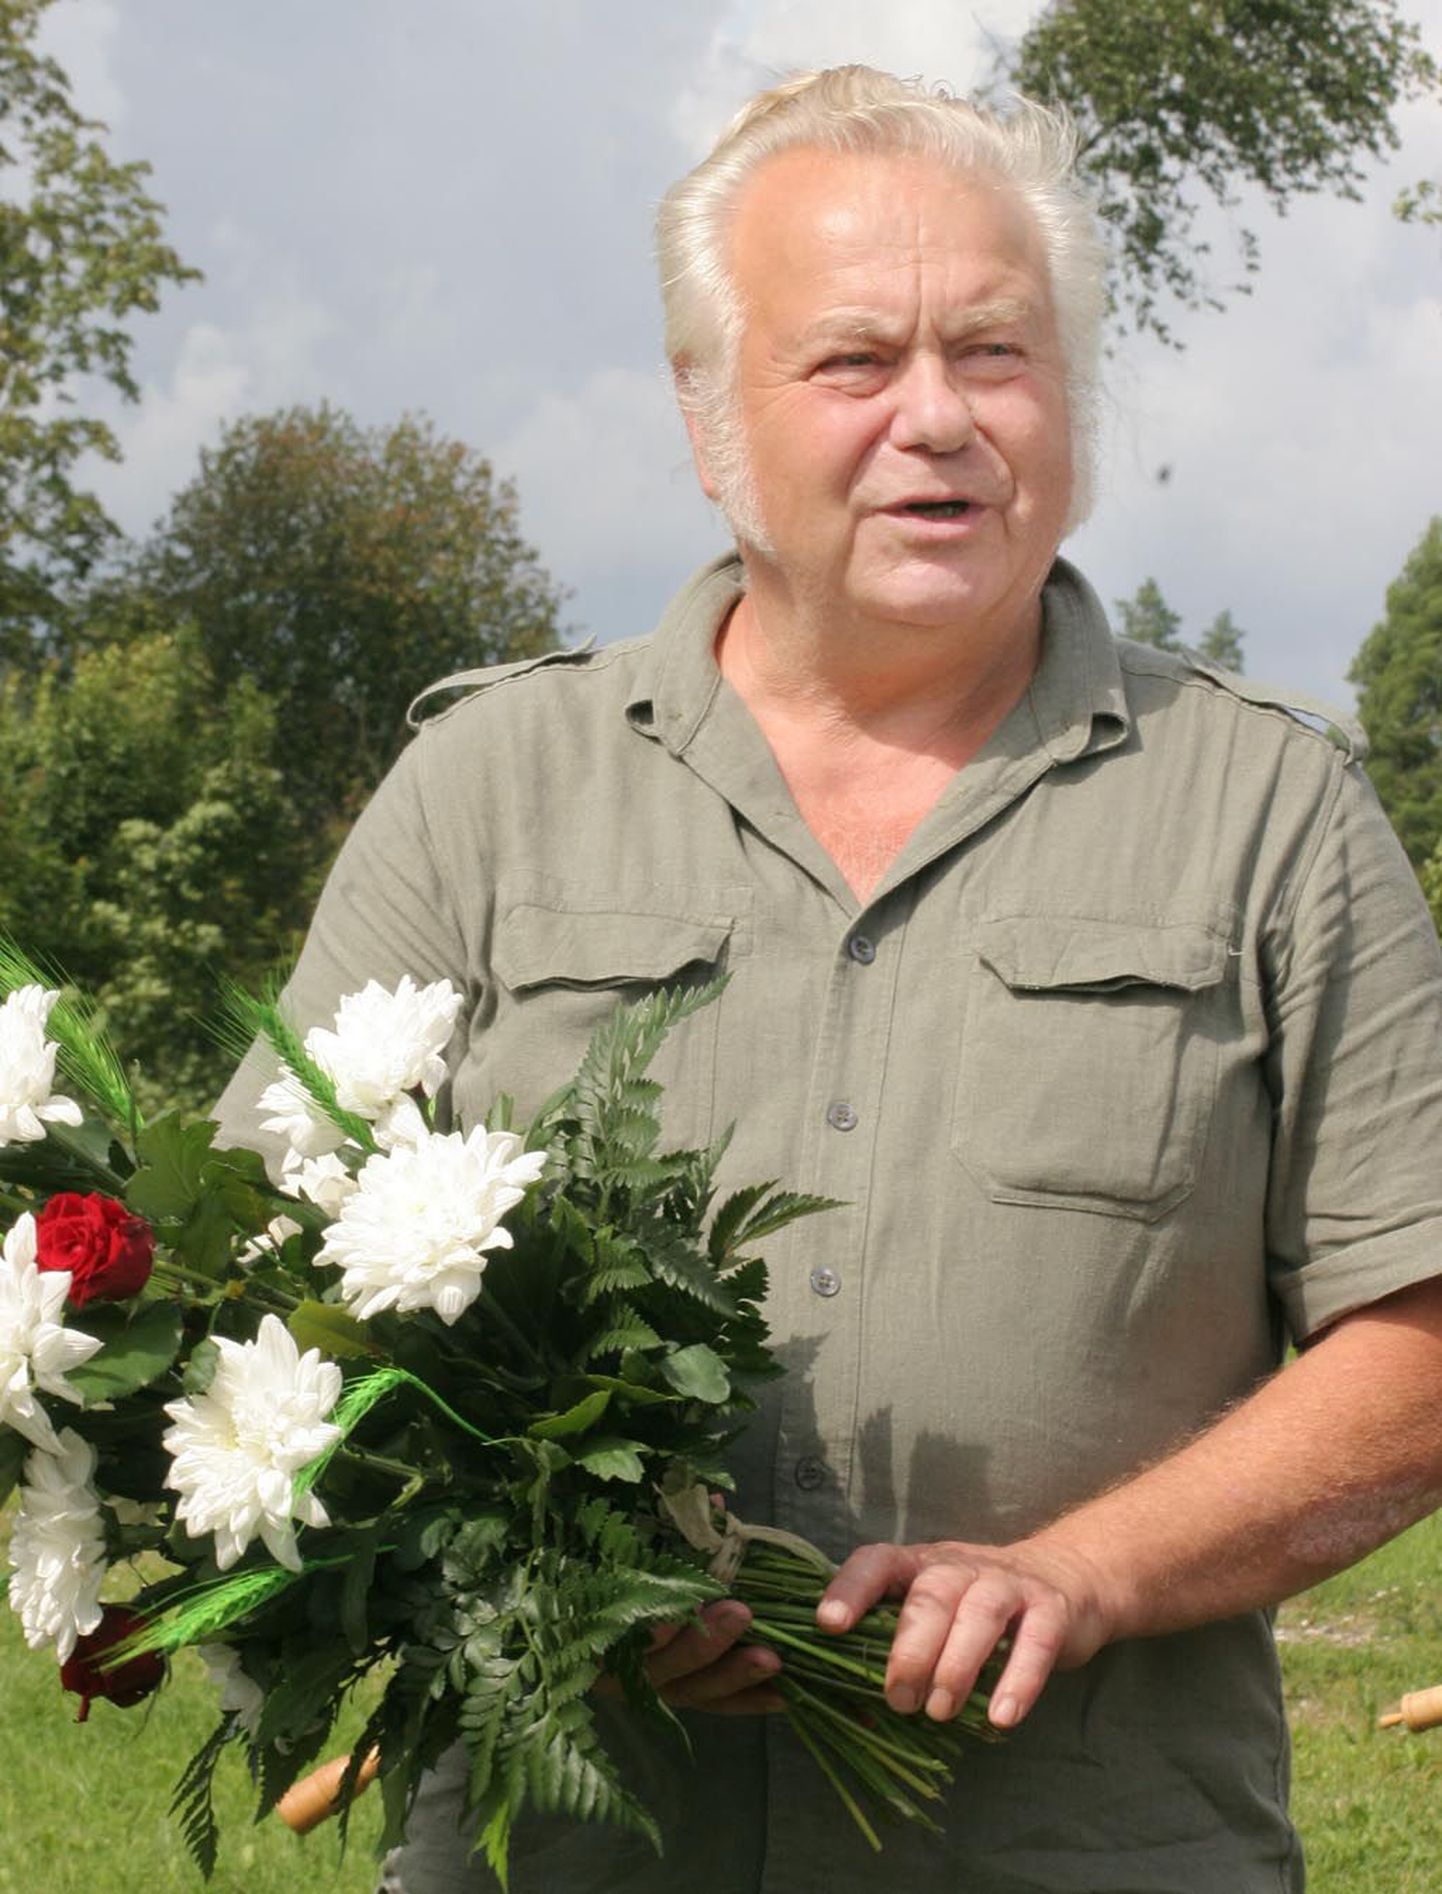 “Jakobsoni tarkus, mida ta põllumeestele on jaganud, ütleb: sul peab oma põllule vastavalt karja olema,” lausus “Pärnumaa populaarseim põllumees 2009” Uno Annus.